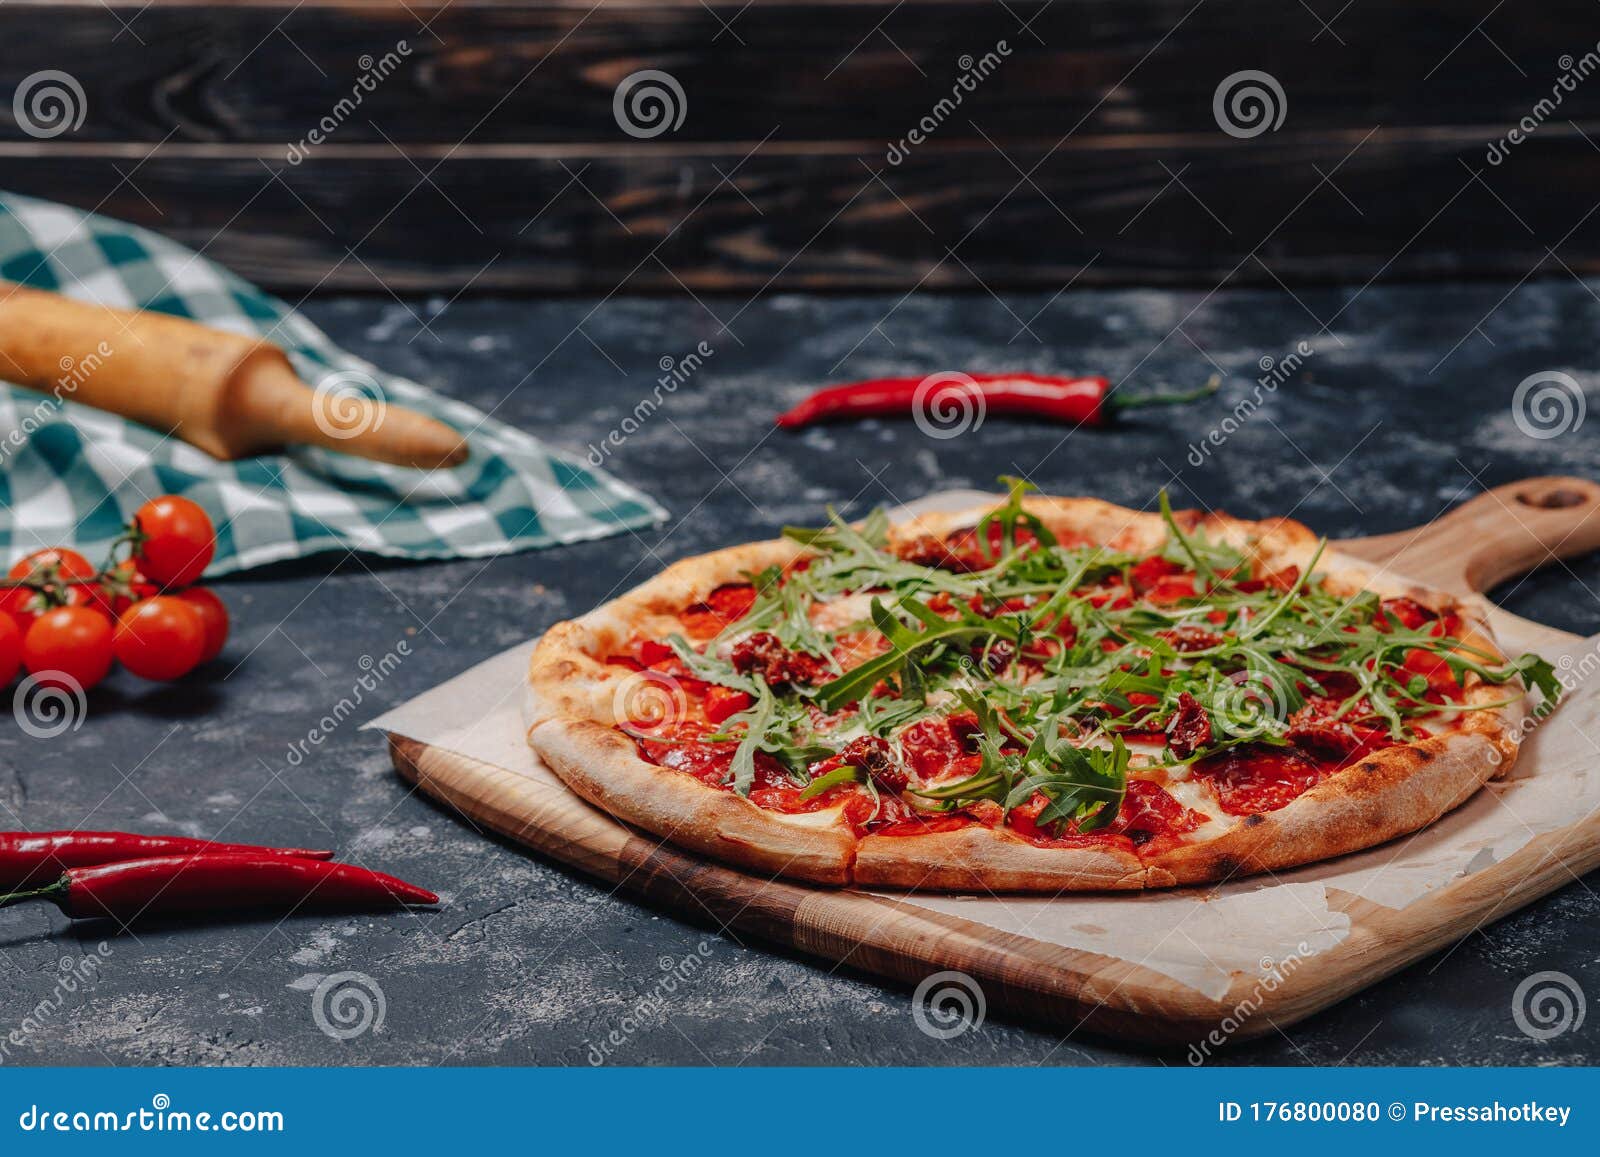 пицца неаполитанская с ветчиной фото 110